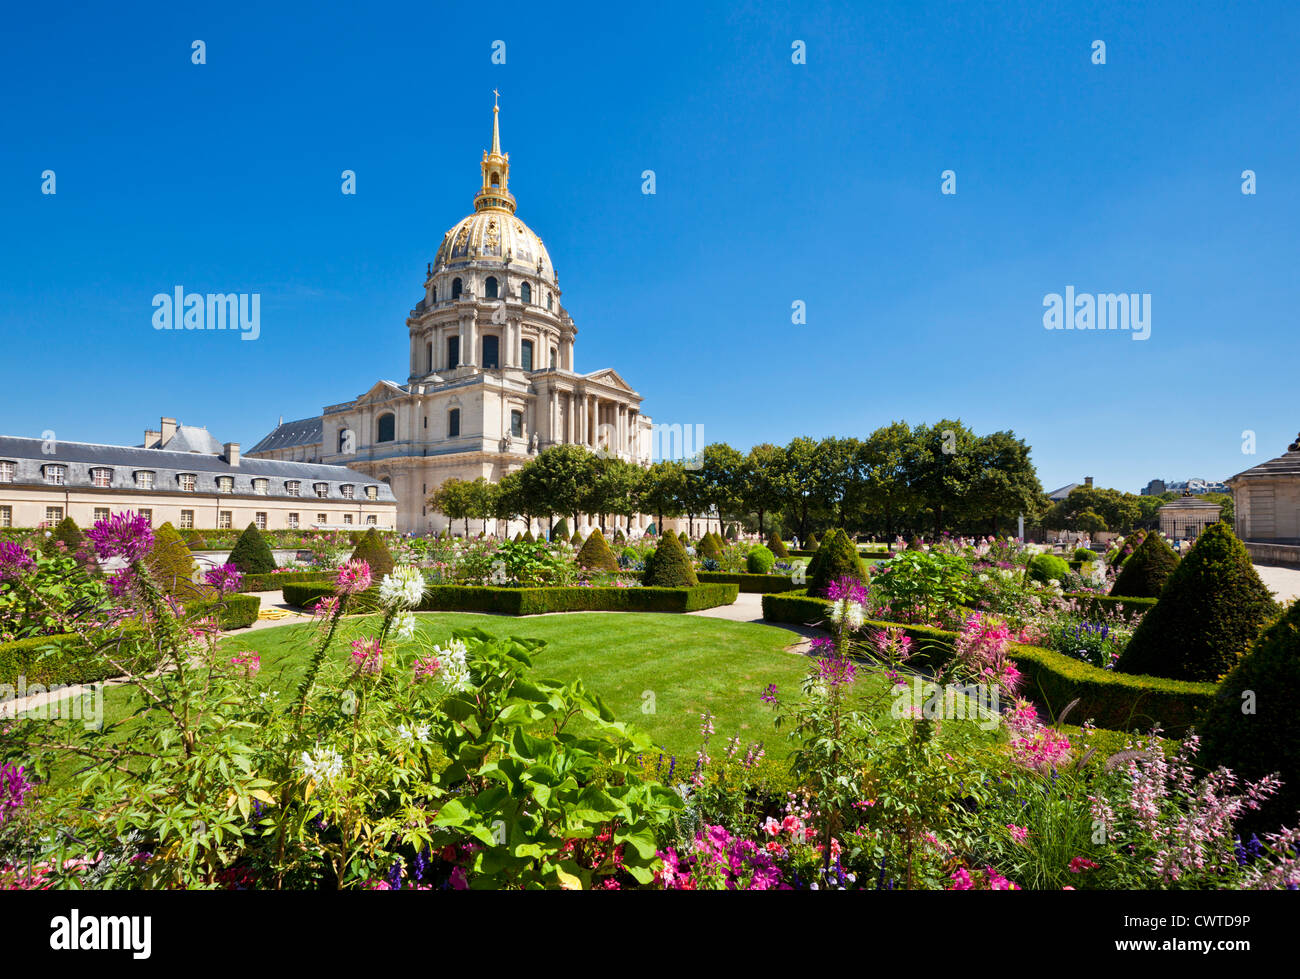 Eglise du Dôme des Invalides et des jardins à la tombe de Napoléon Paris France Europe de l'UE Banque D'Images